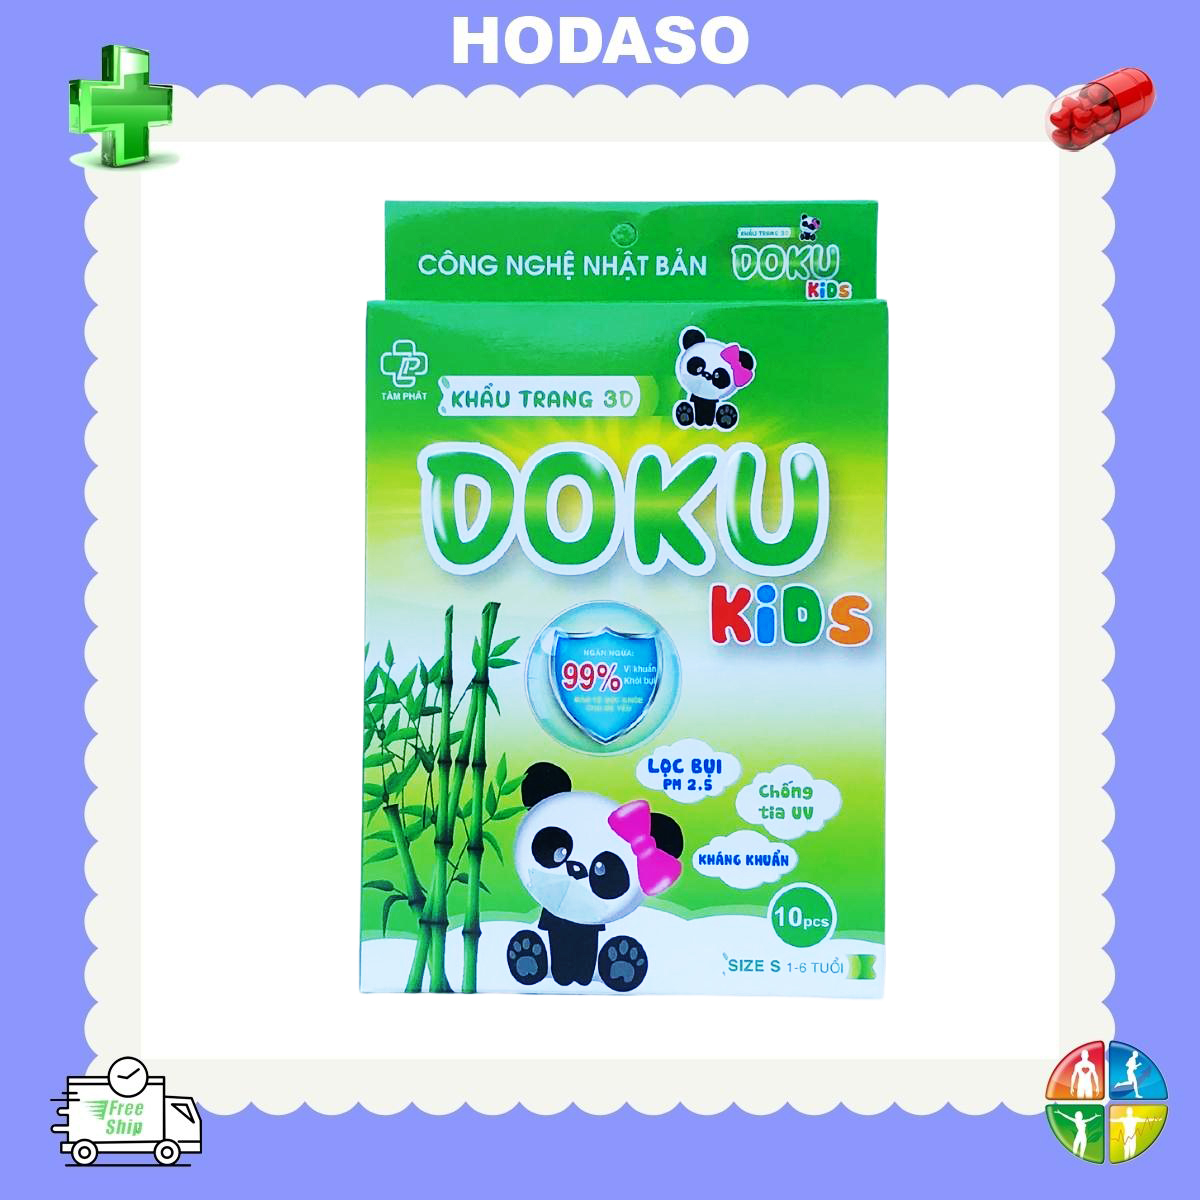 Khẩu trang 3D Doku Kids Khẩu trang 3d cho bé Tuổi từ 1 đến 6 Chống bụi Ngăn vi khuẩn Bảo vệ Hệ miễn dịch